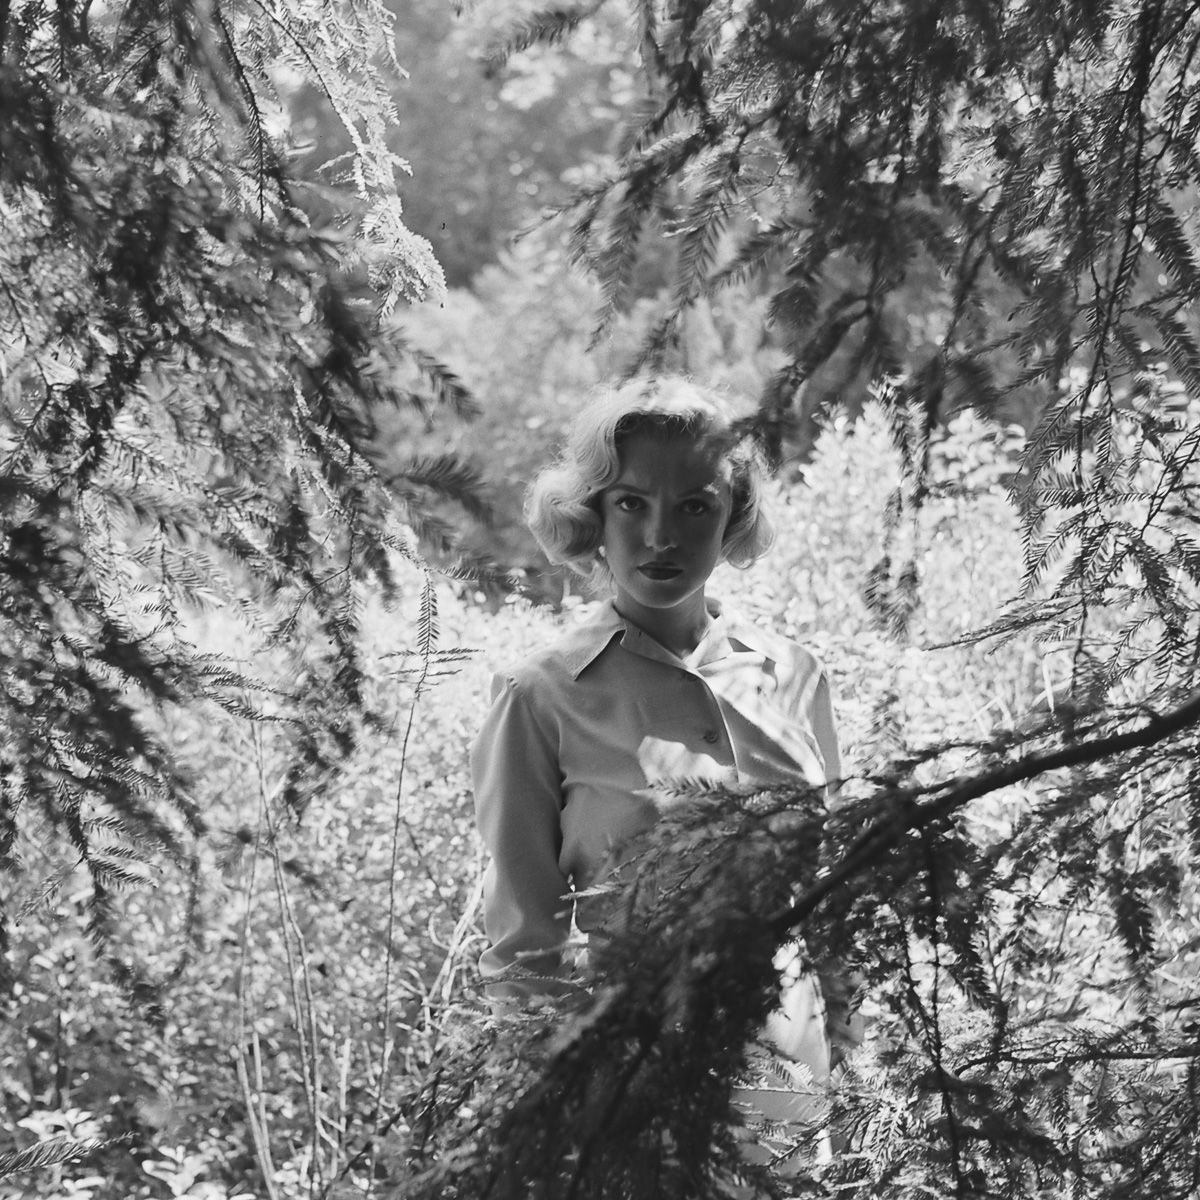 Fotos raras de Marilyn Monroe caminhando no bosque antes de ser famosa 11